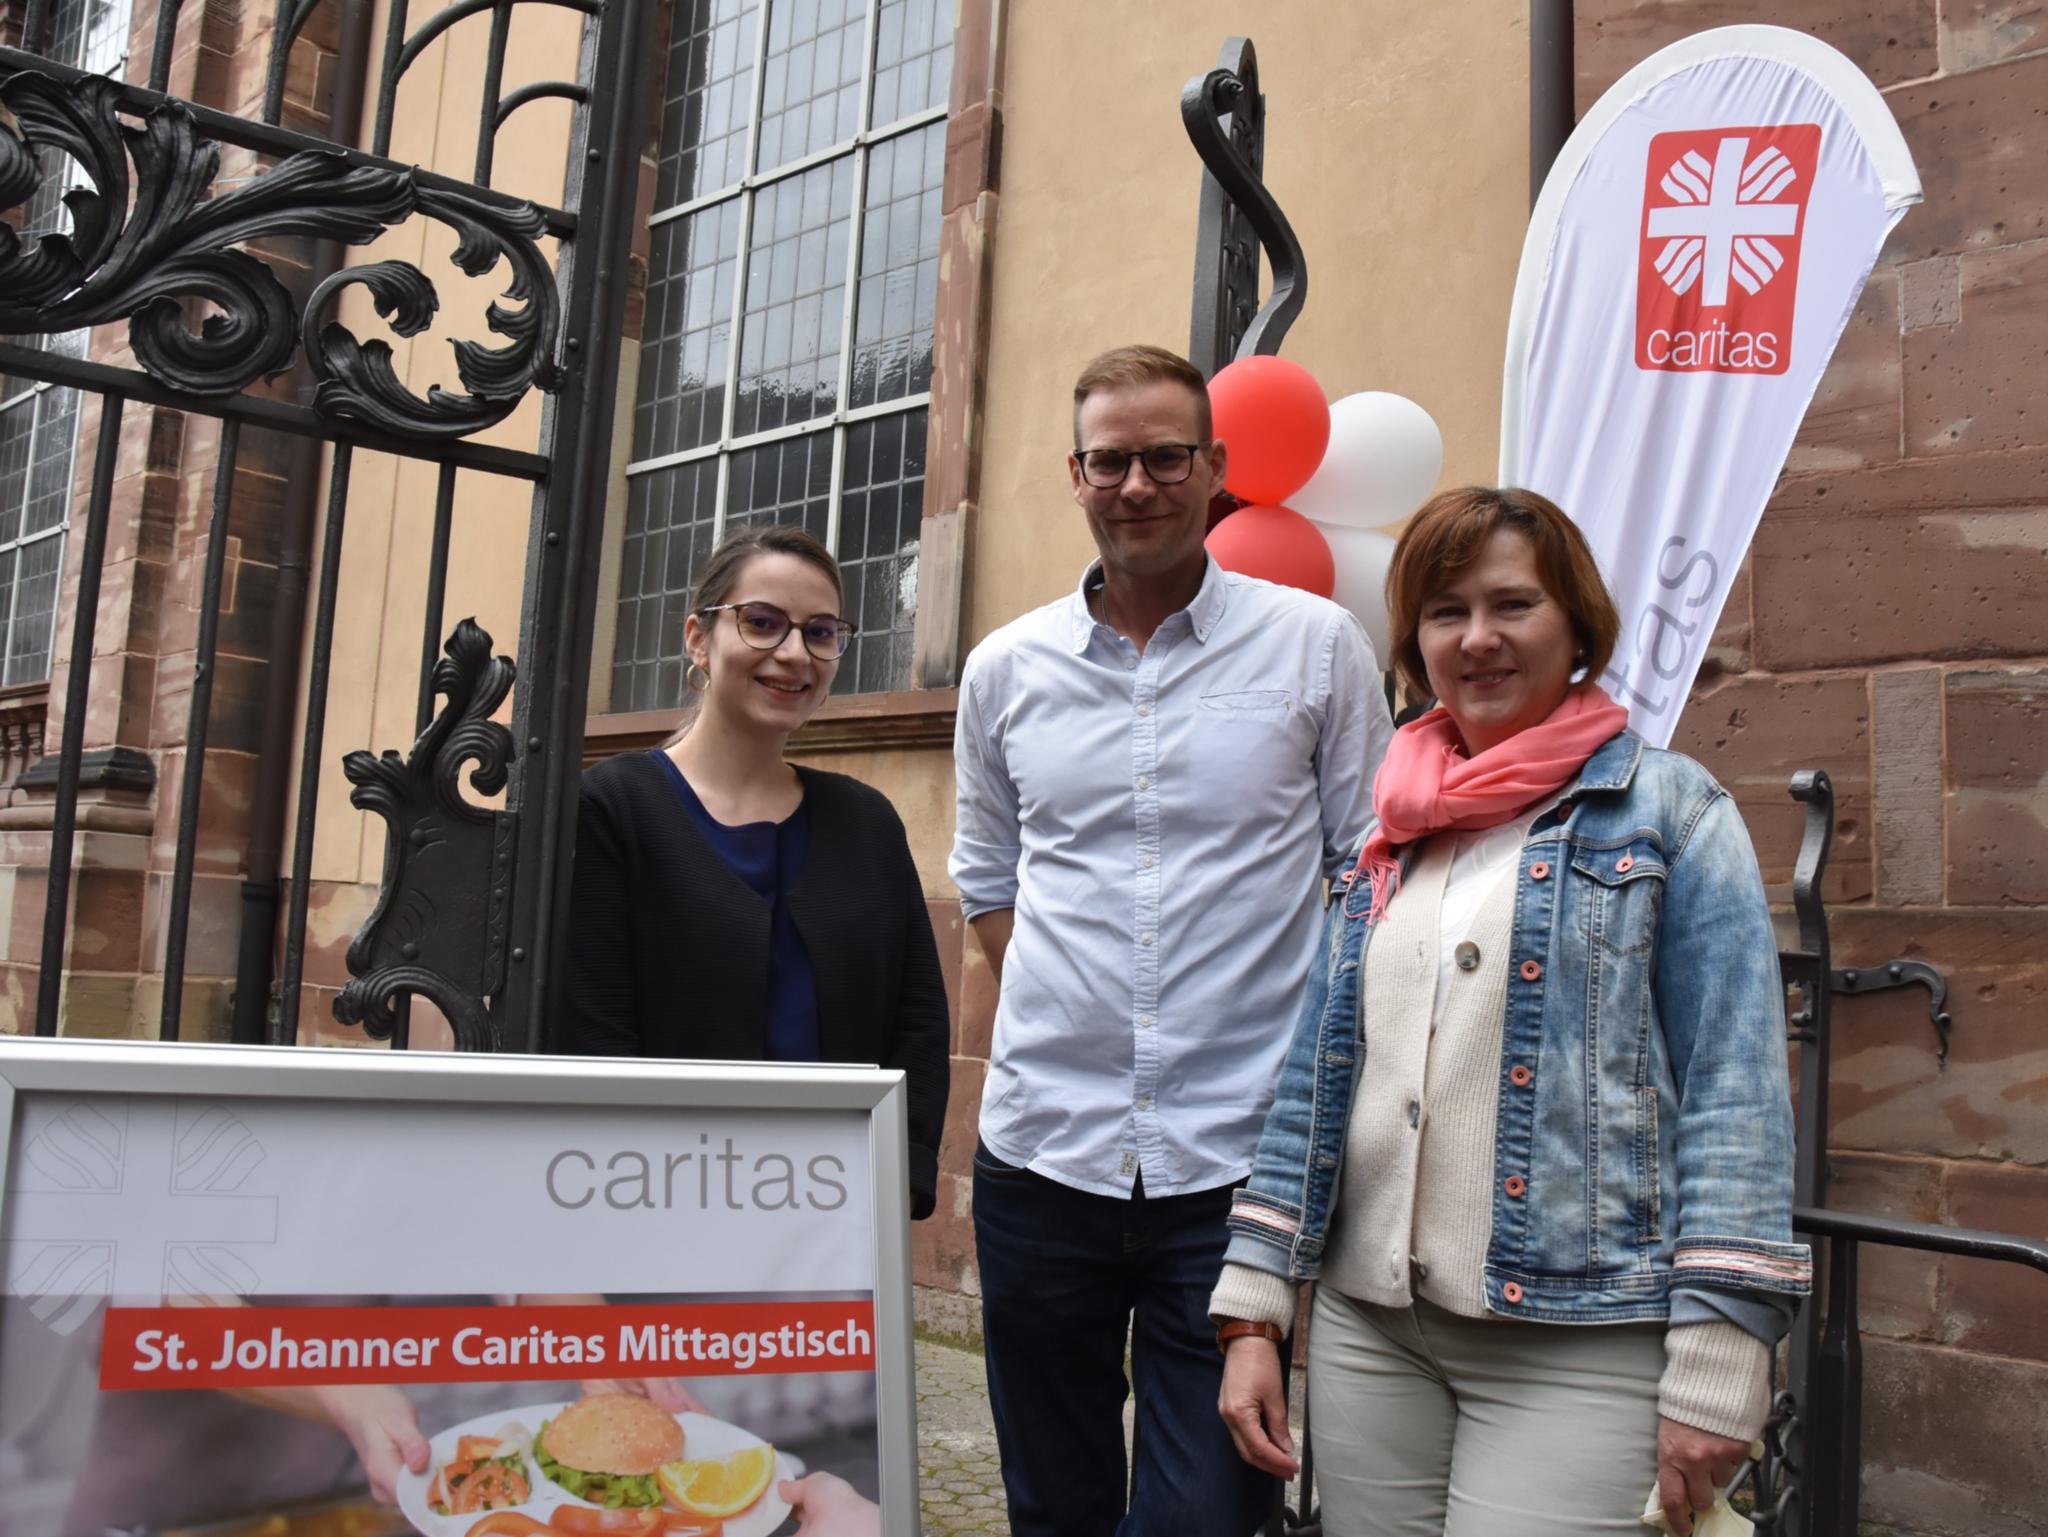 Laura Porco, Stefan Schumacher und Susanne Tussing mit Caritas Werbung